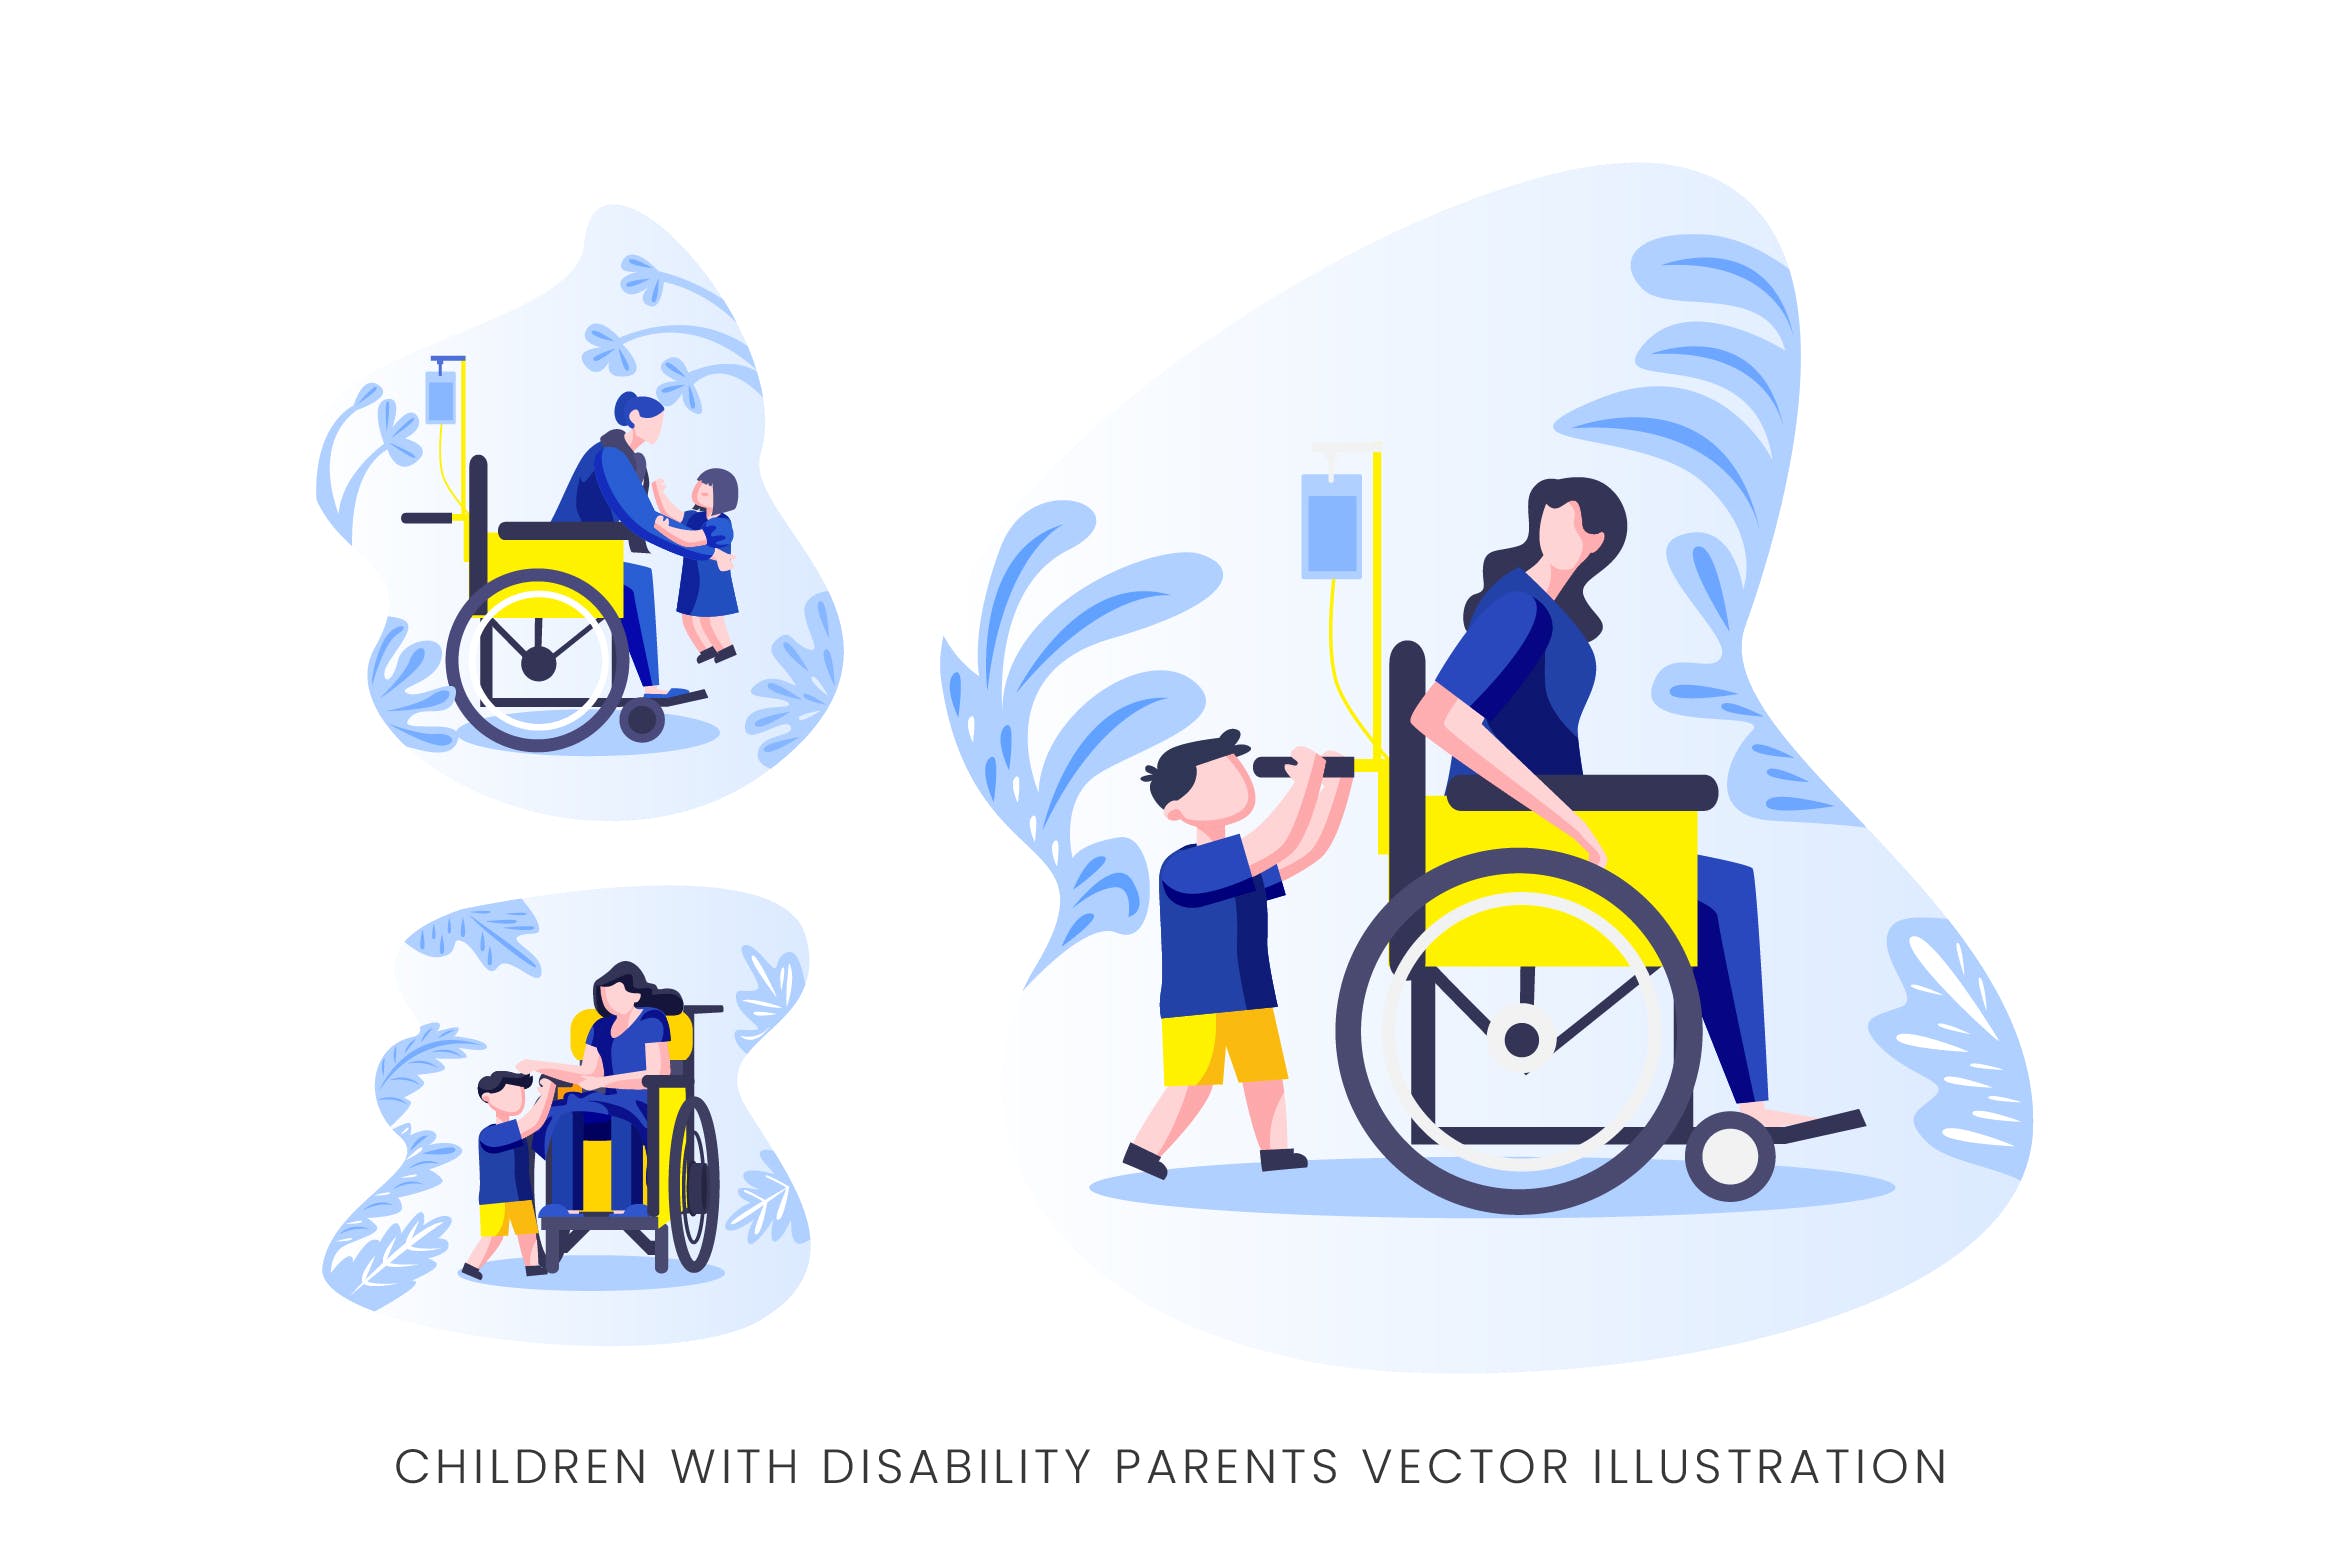 伤残人士与儿童人物形象大洋岛精选手绘插画矢量素材 Children With Disability Parents Vector Character插图